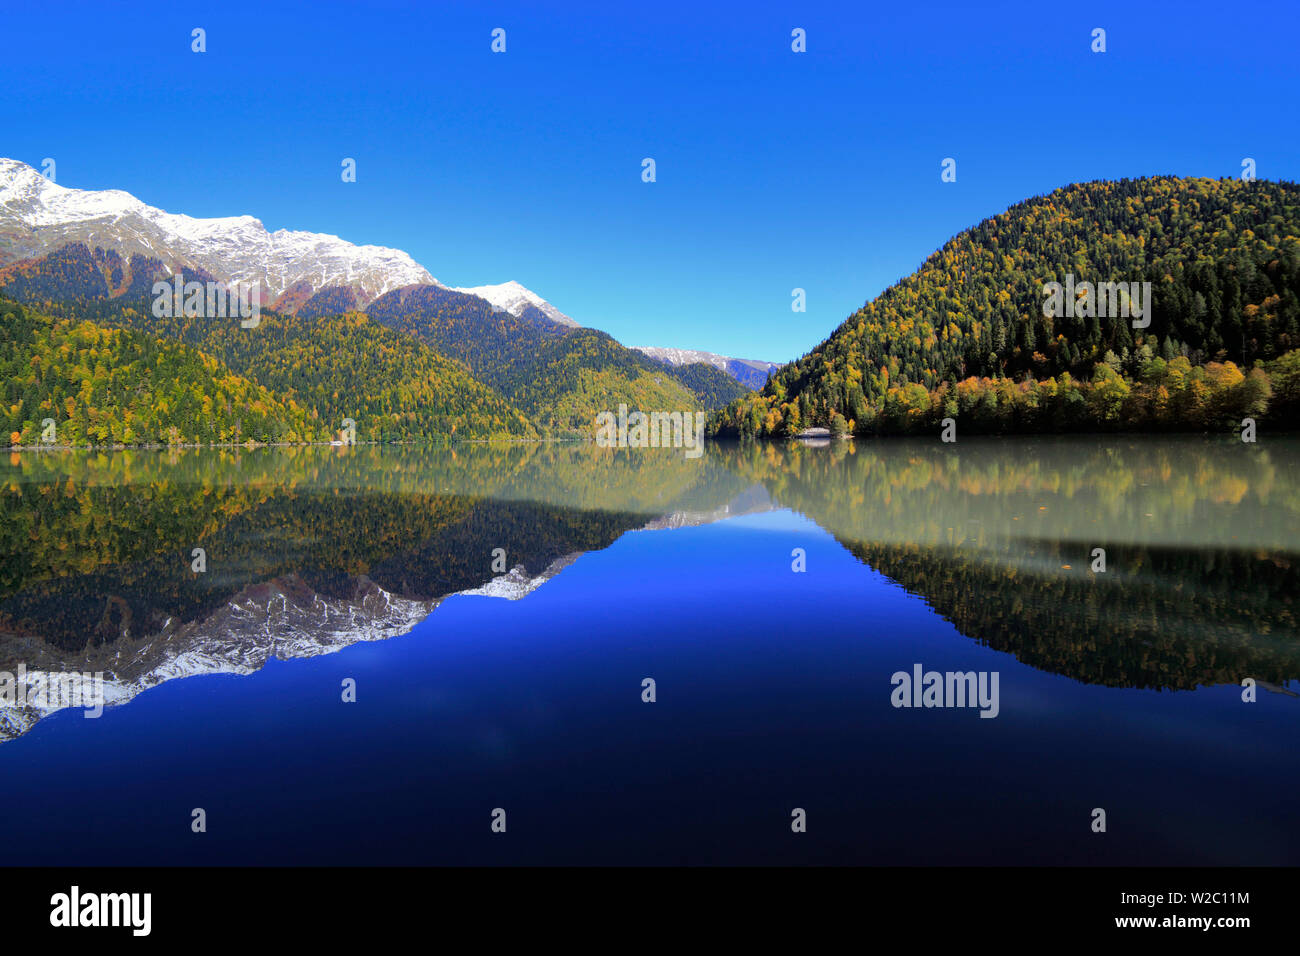 Lake Ritsa, Caucasus mountains, Abkhazia, Georgia Stock Photo